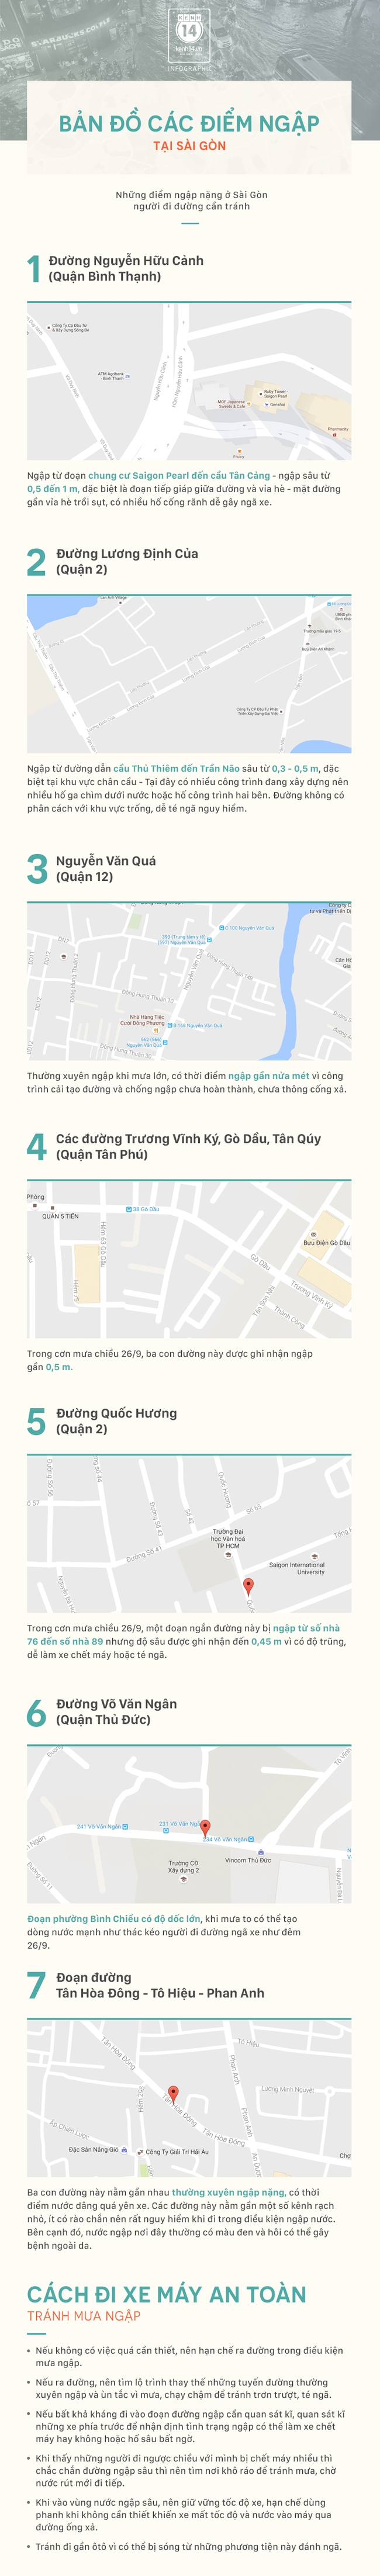 Infographic: 7 điểm ngập nặng nhất ở Sài Gòn khi có mưa lớn - Ảnh 1.